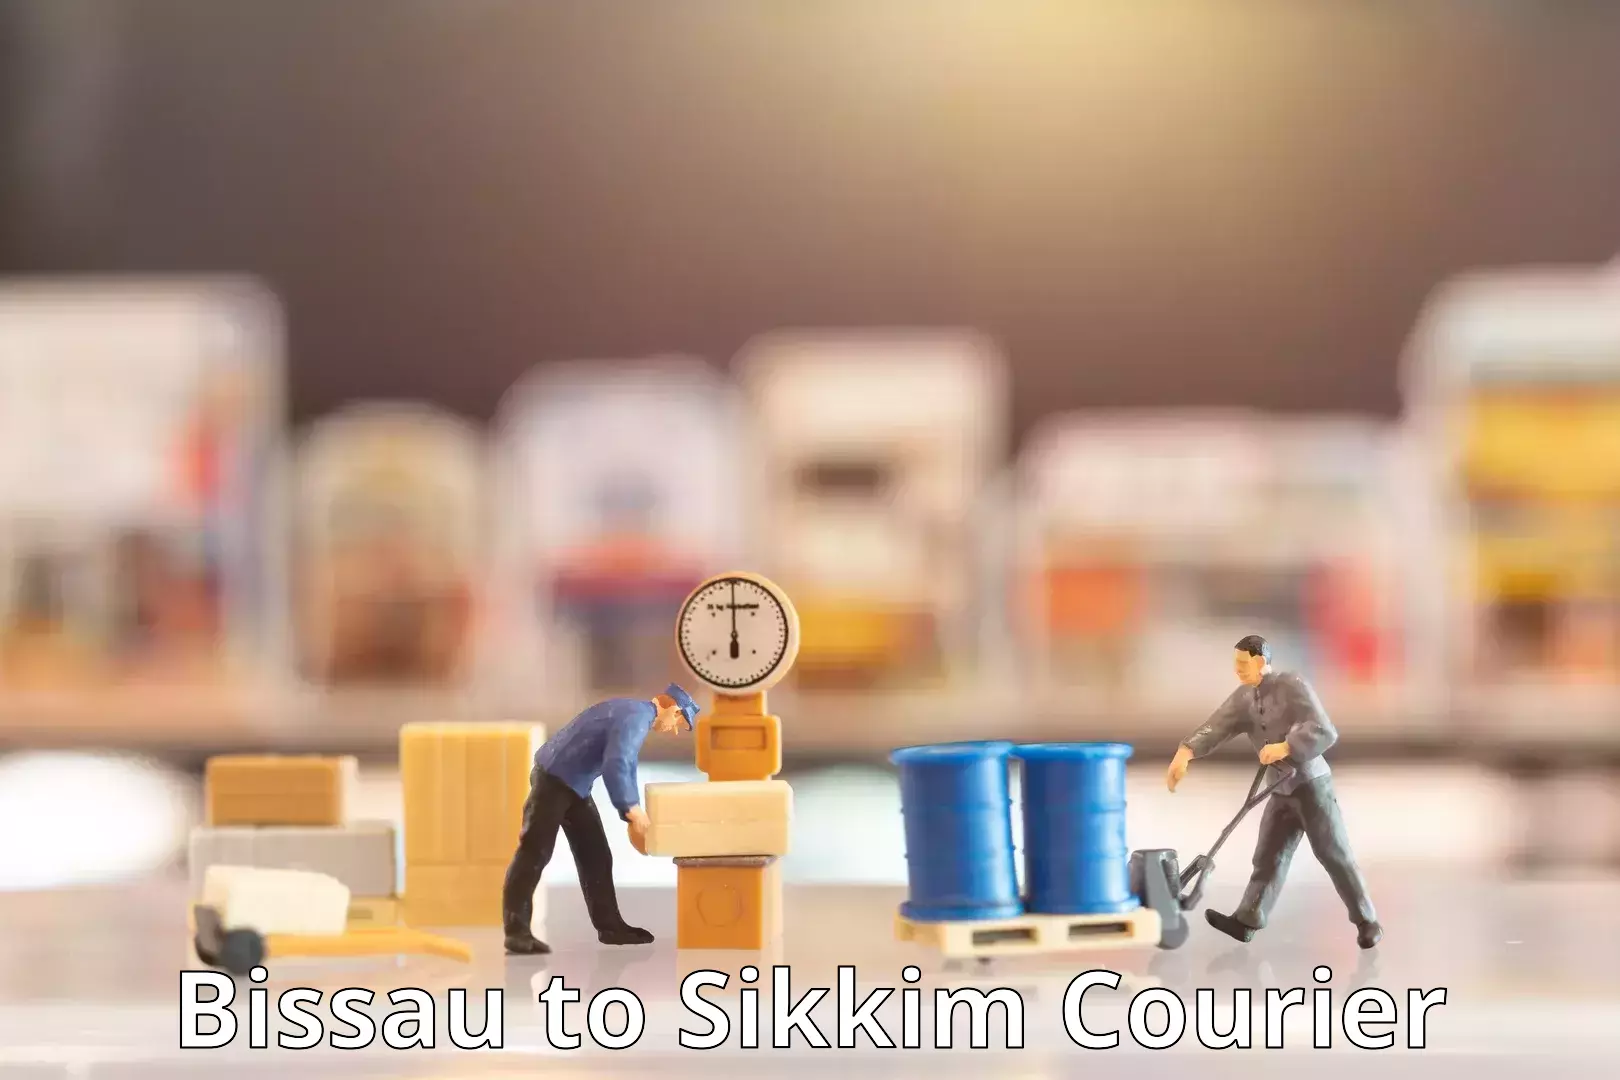 Courier service comparison Bissau to North Sikkim